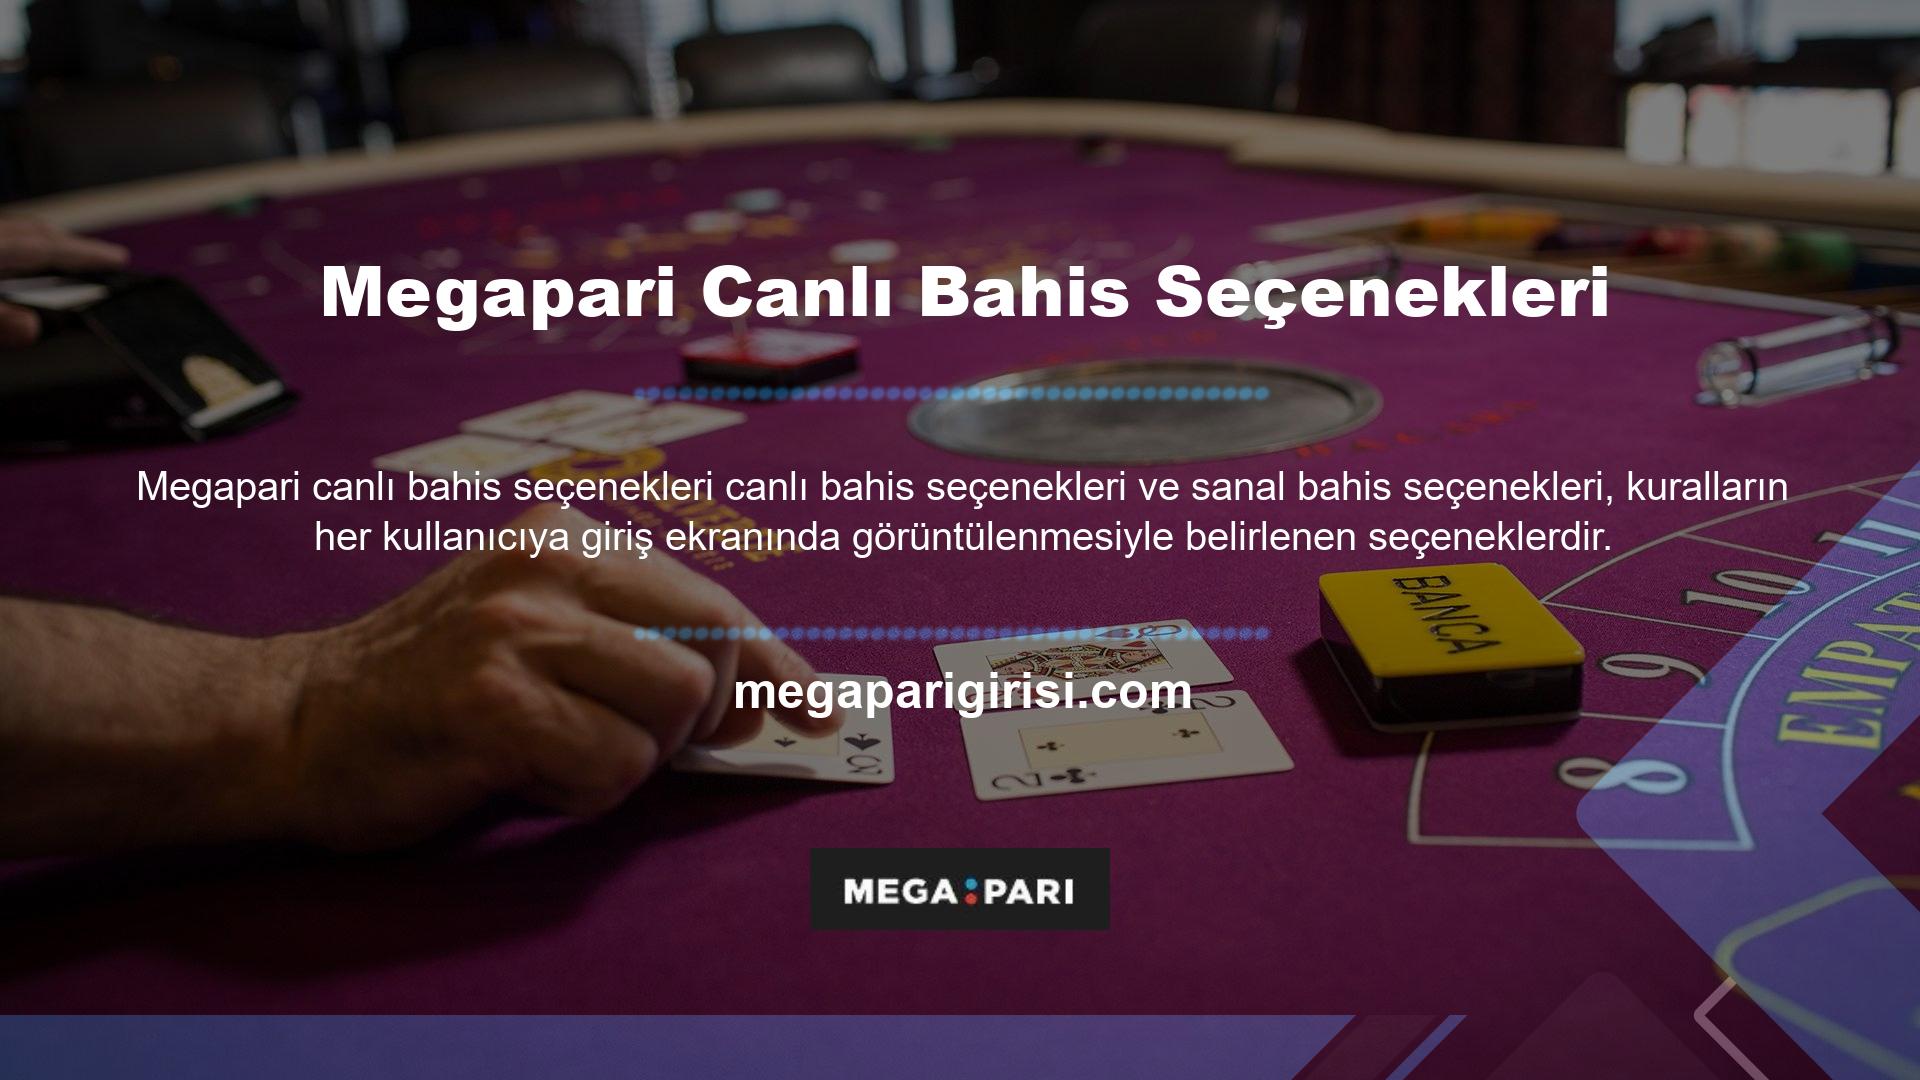 Sitede bulunan Megapari sanal spor uygulamalarına ilişkin sanal spor bahisleri konusu bulunmaktadır